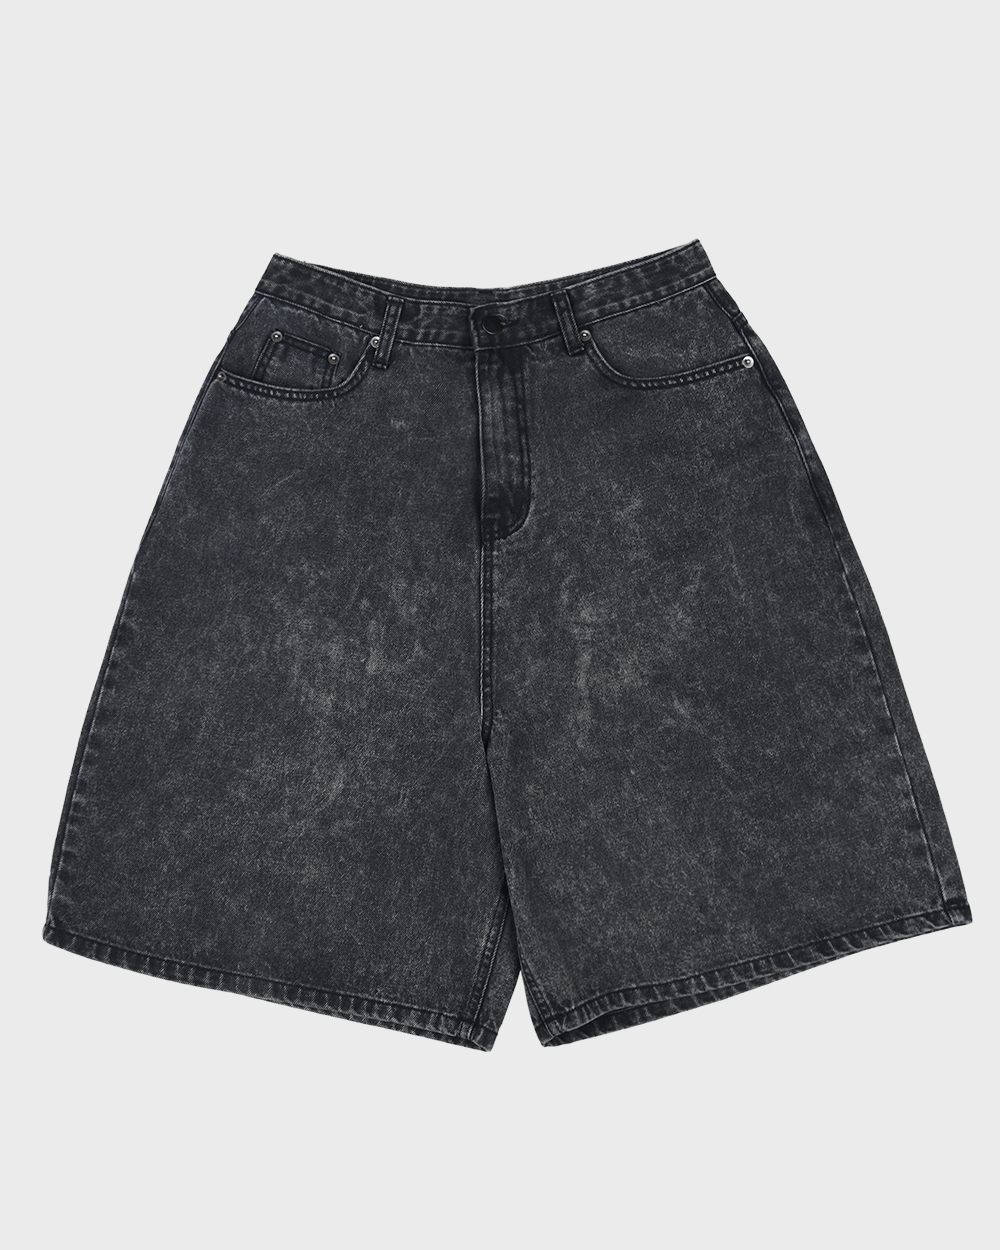 aeae Stone-washed Denim Shorts (Washed black)